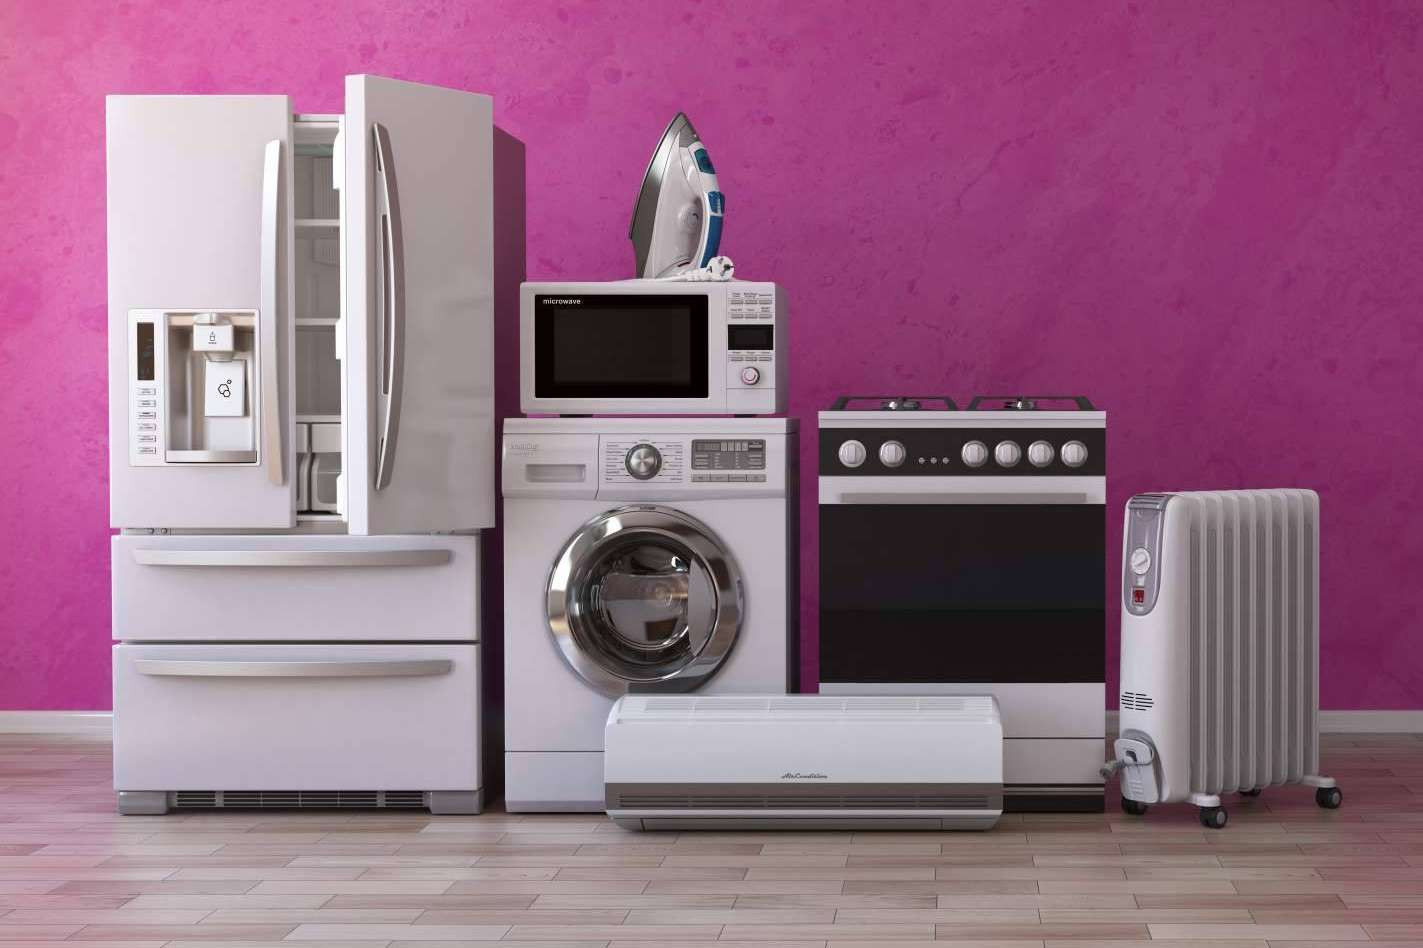  La Casa del Electrodoméstico ofrece electrodomésticos que permiten que los hogares sean más cómodos 